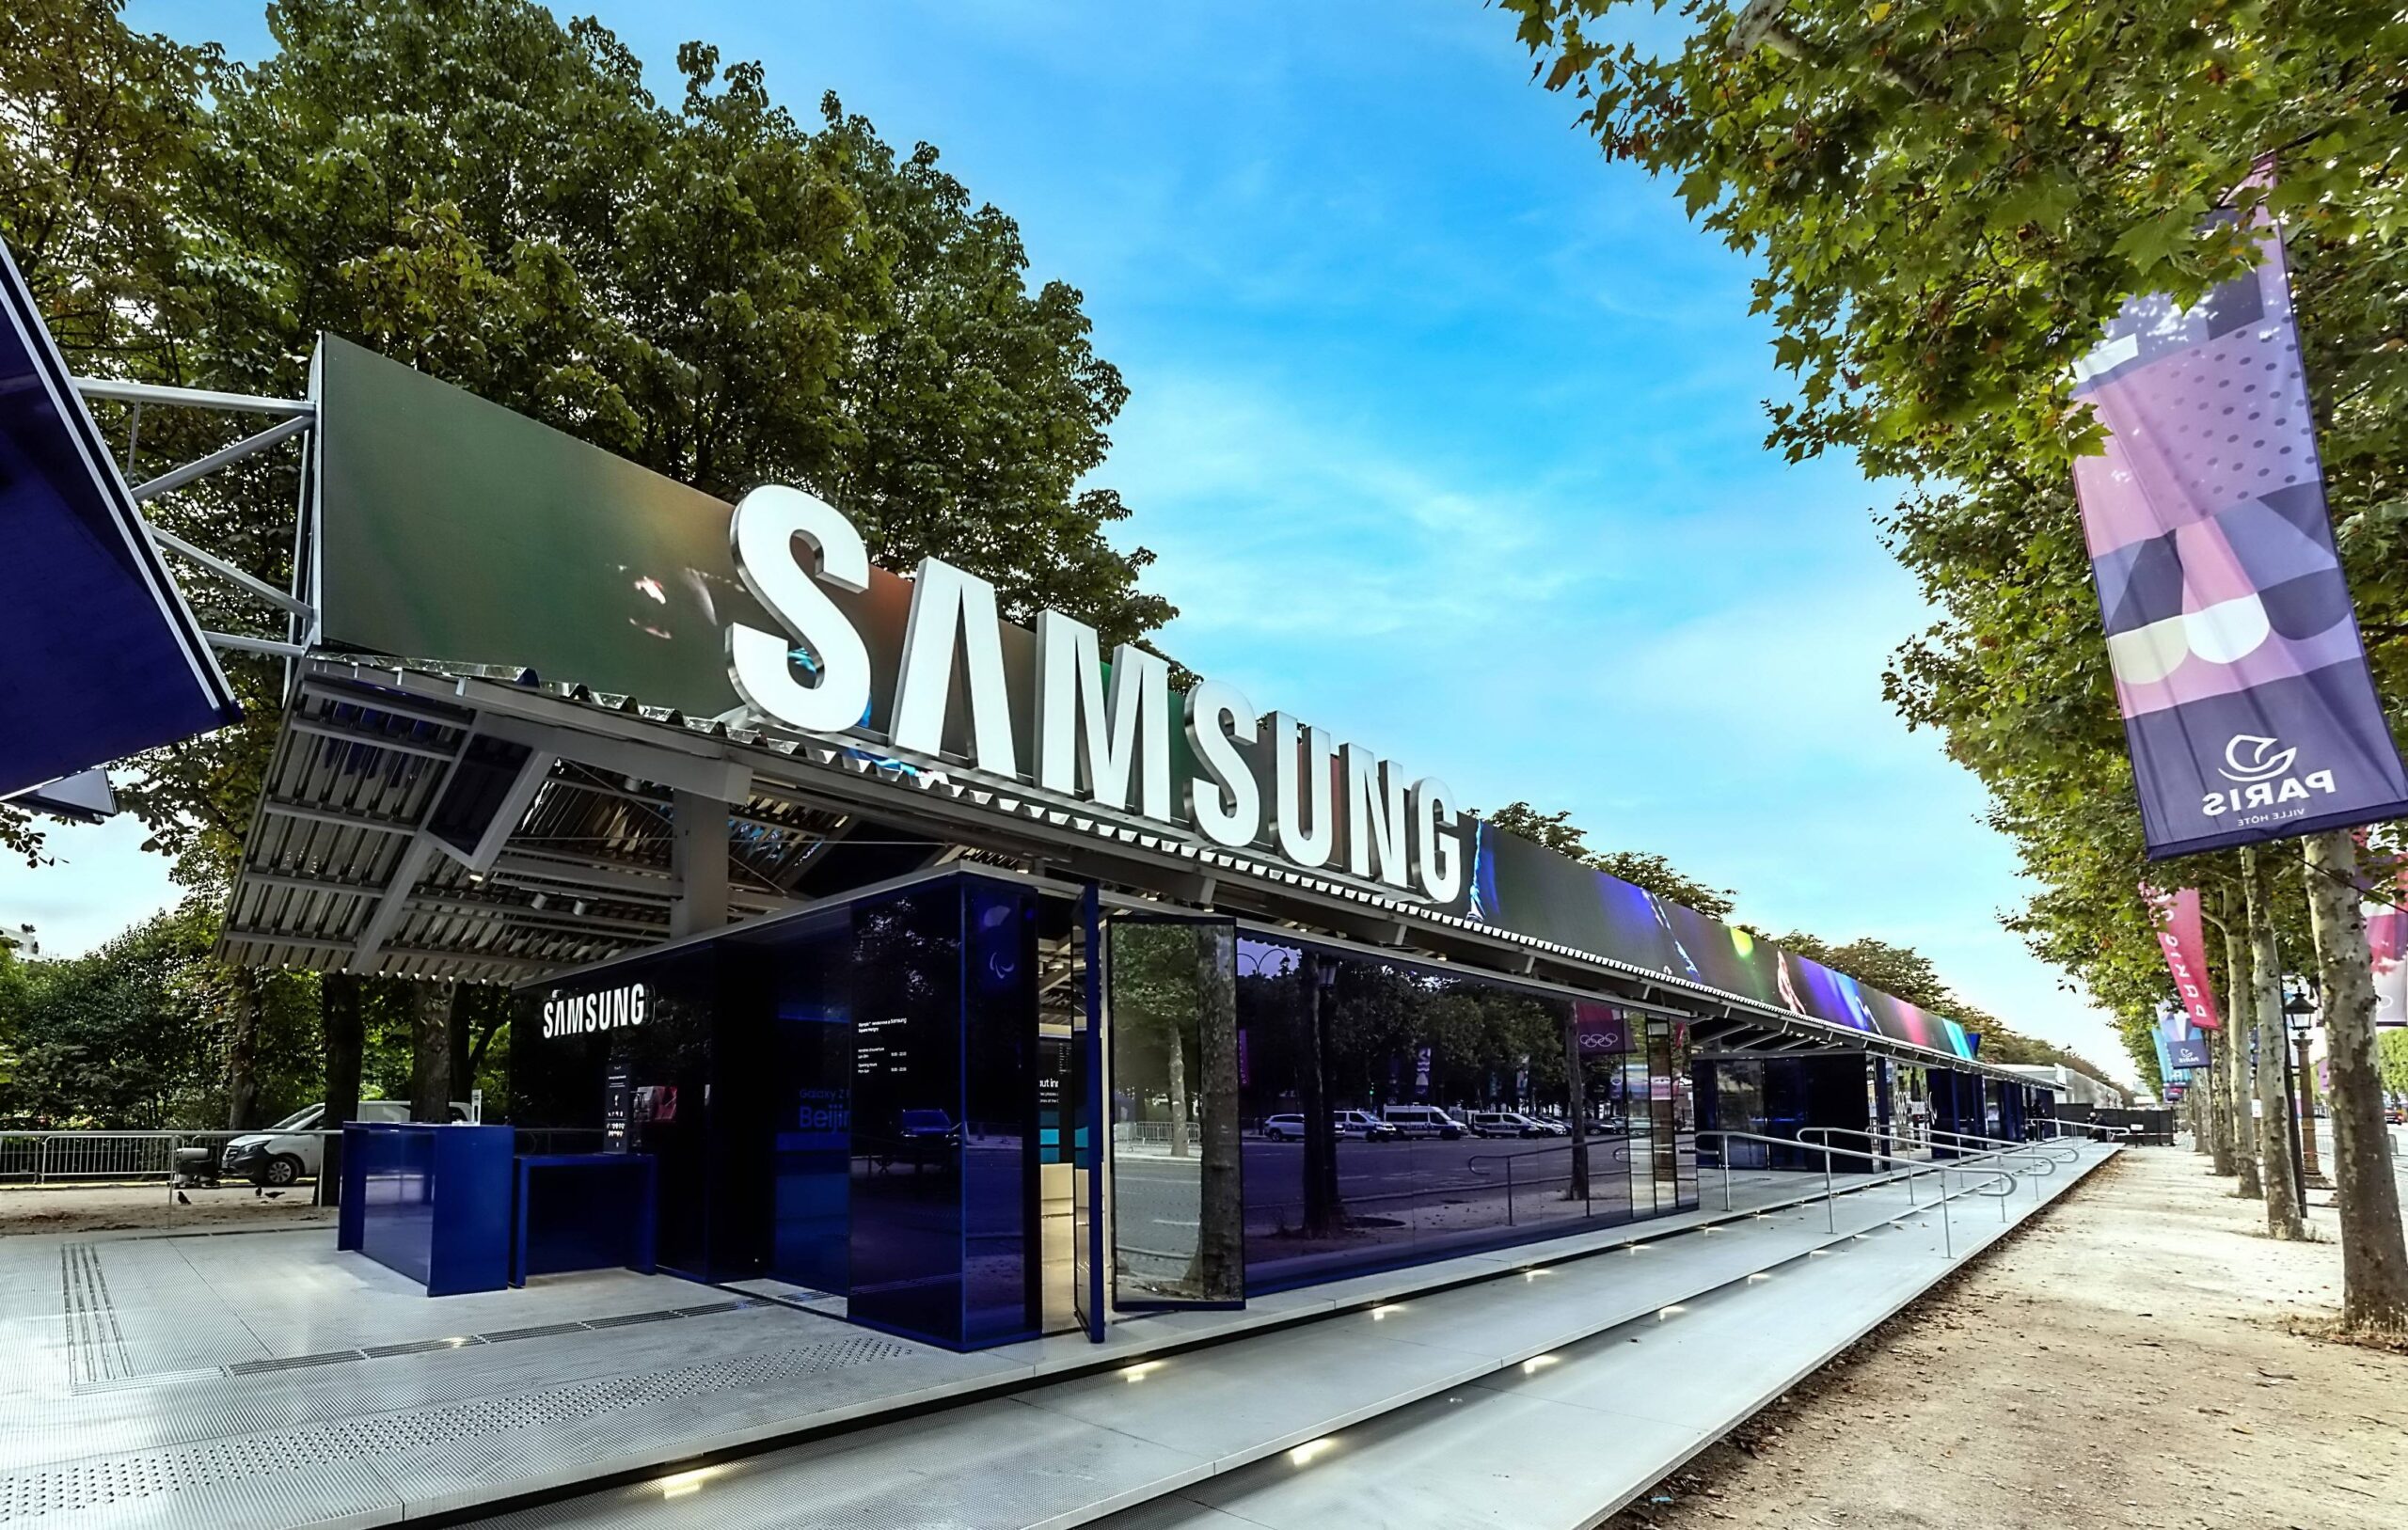 Paris 2024 : Samsung sur les starting-blocks avec son nouvel espace Olympic™ rendez-vous @ Samsung | Square Marigny.